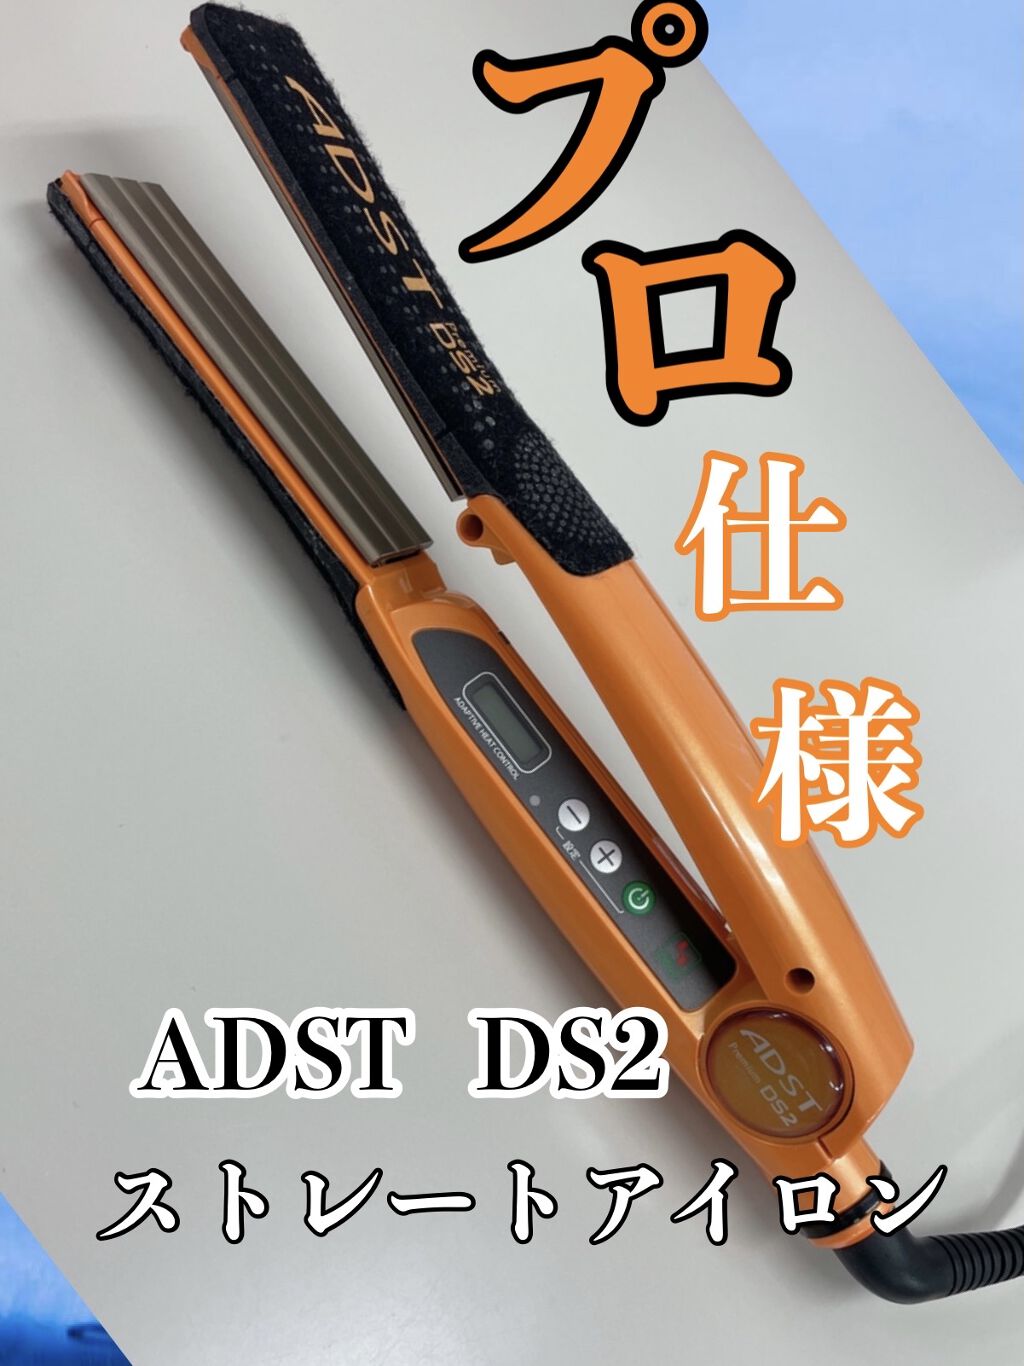 限定品】 アドストDS2 ストレートヘアアイロン asakusa.sub.jp